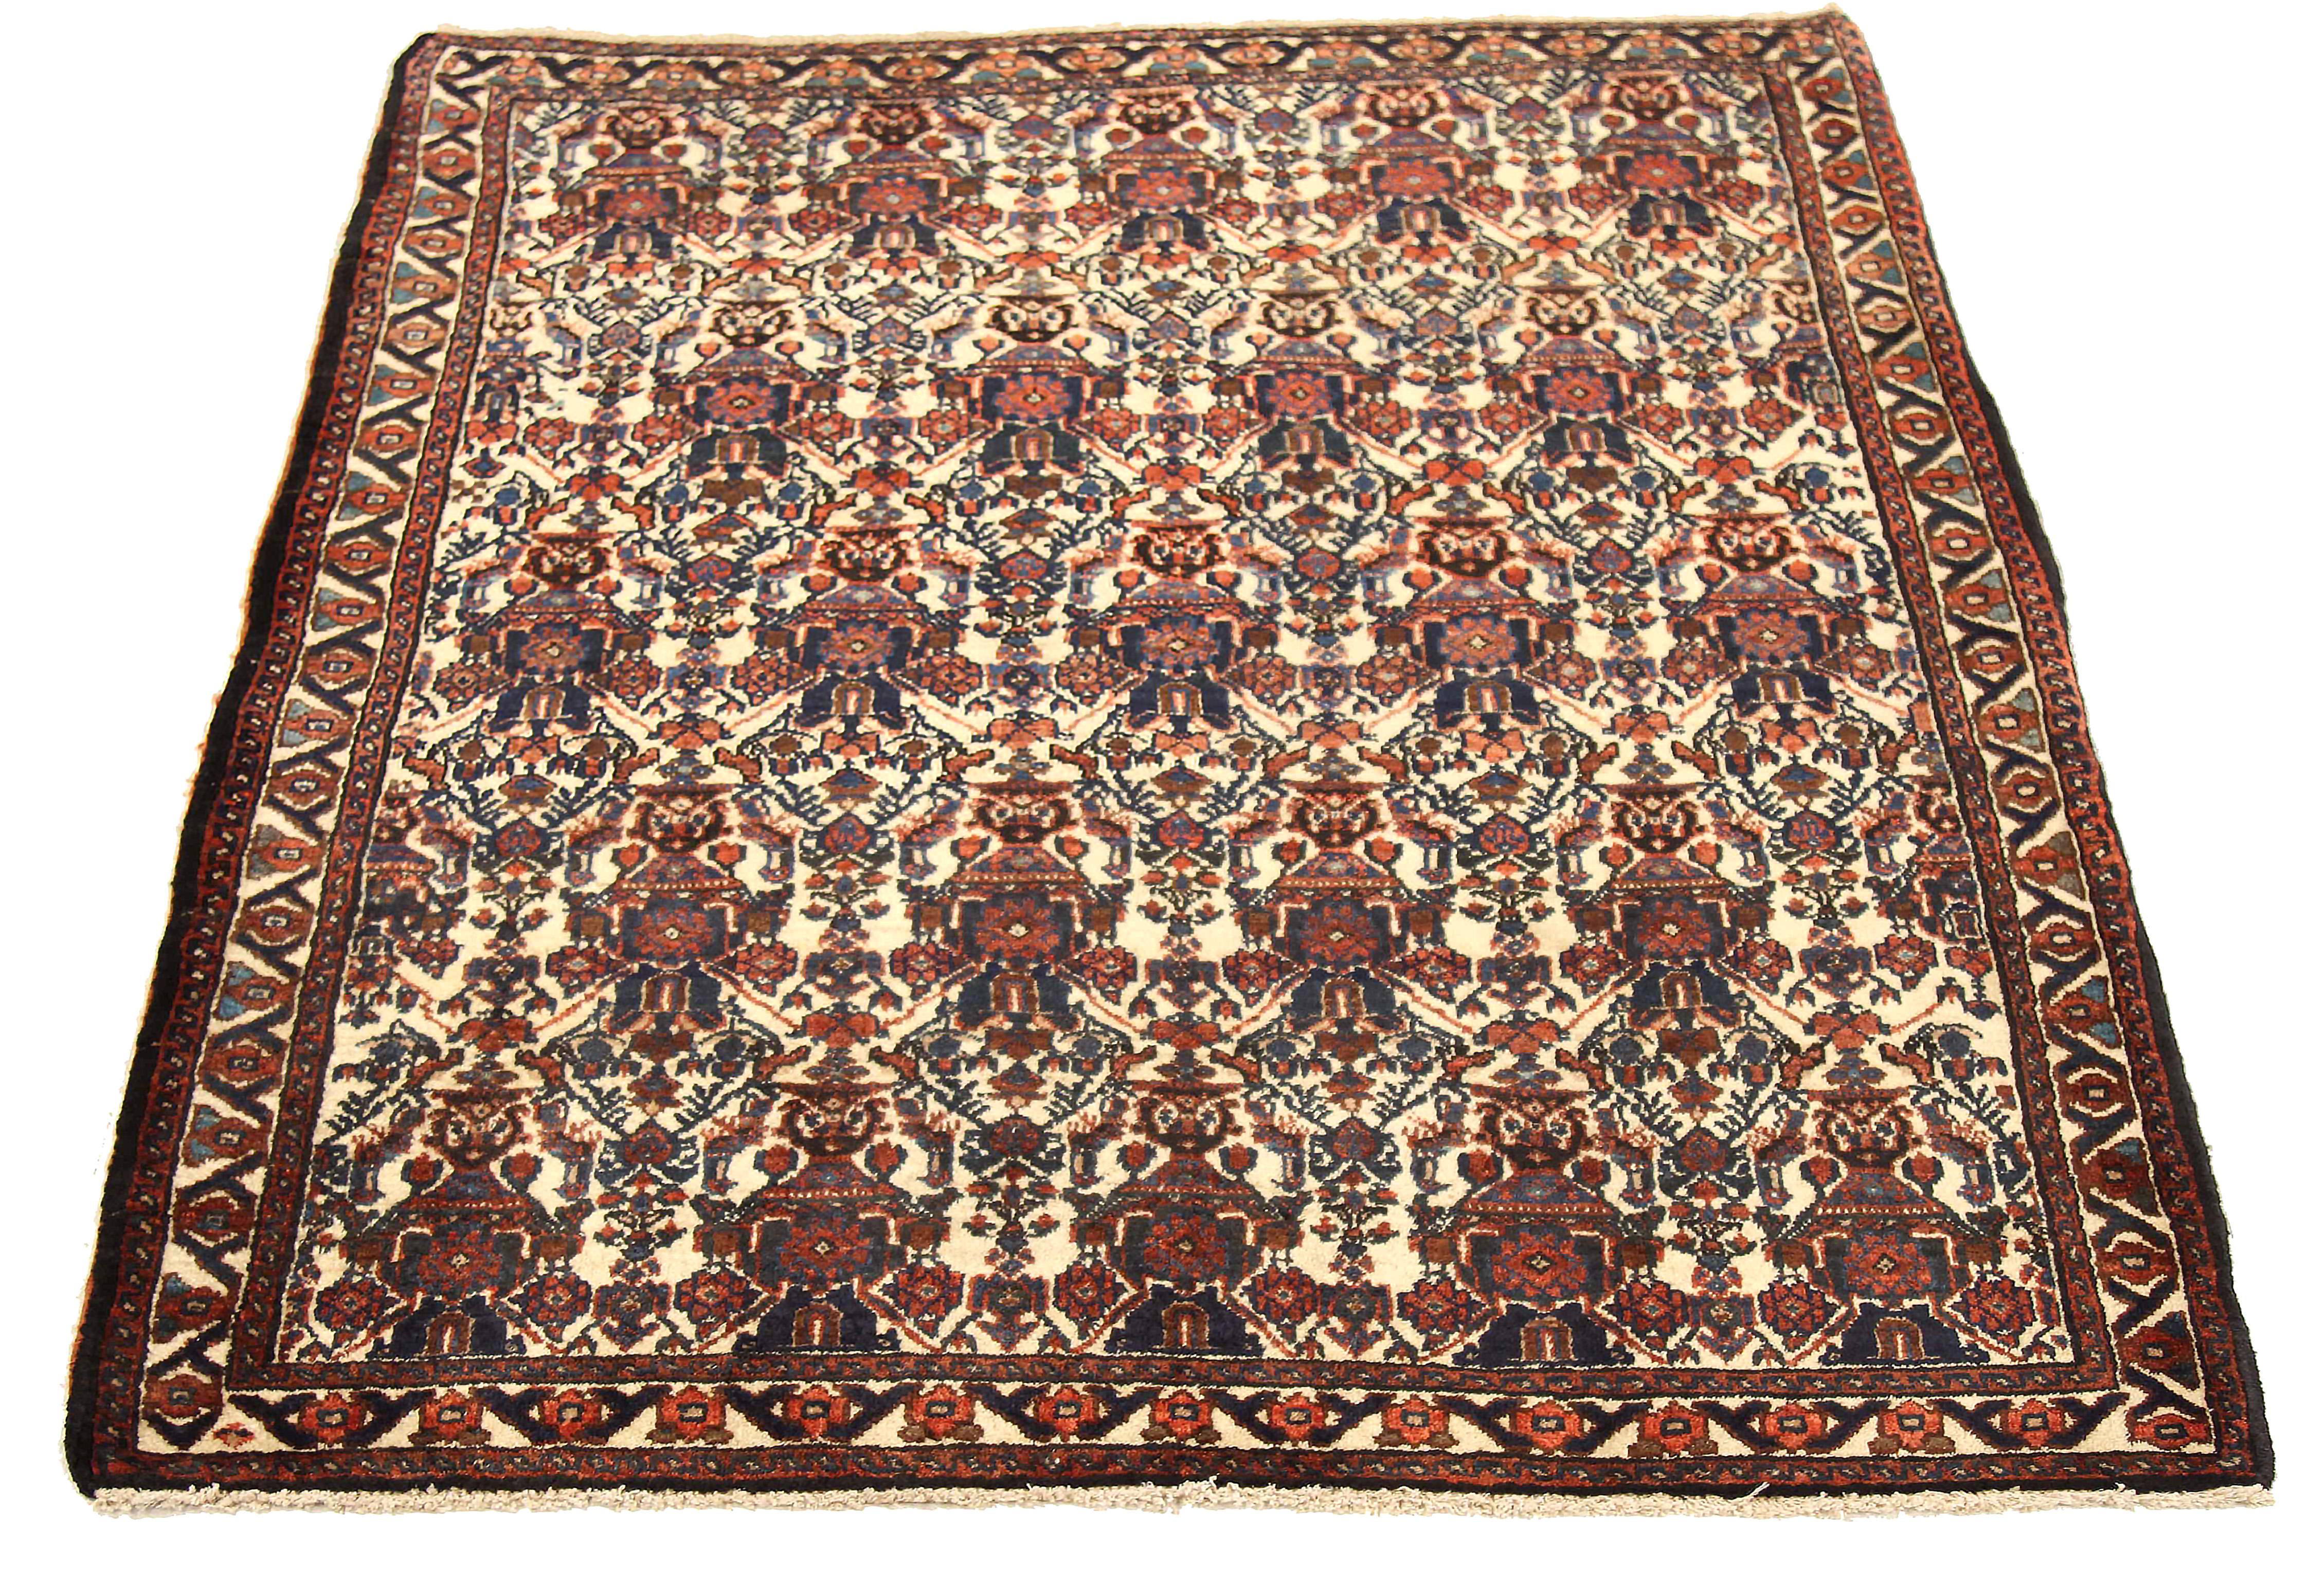 Ancien tapis persan tissé à la main à partir de la meilleure laine de mouton. Il est coloré avec des colorants végétaux entièrement naturels, sans danger pour les humains et les animaux de compagnie. Il s'agit d'un modèle traditionnel de Shiraz